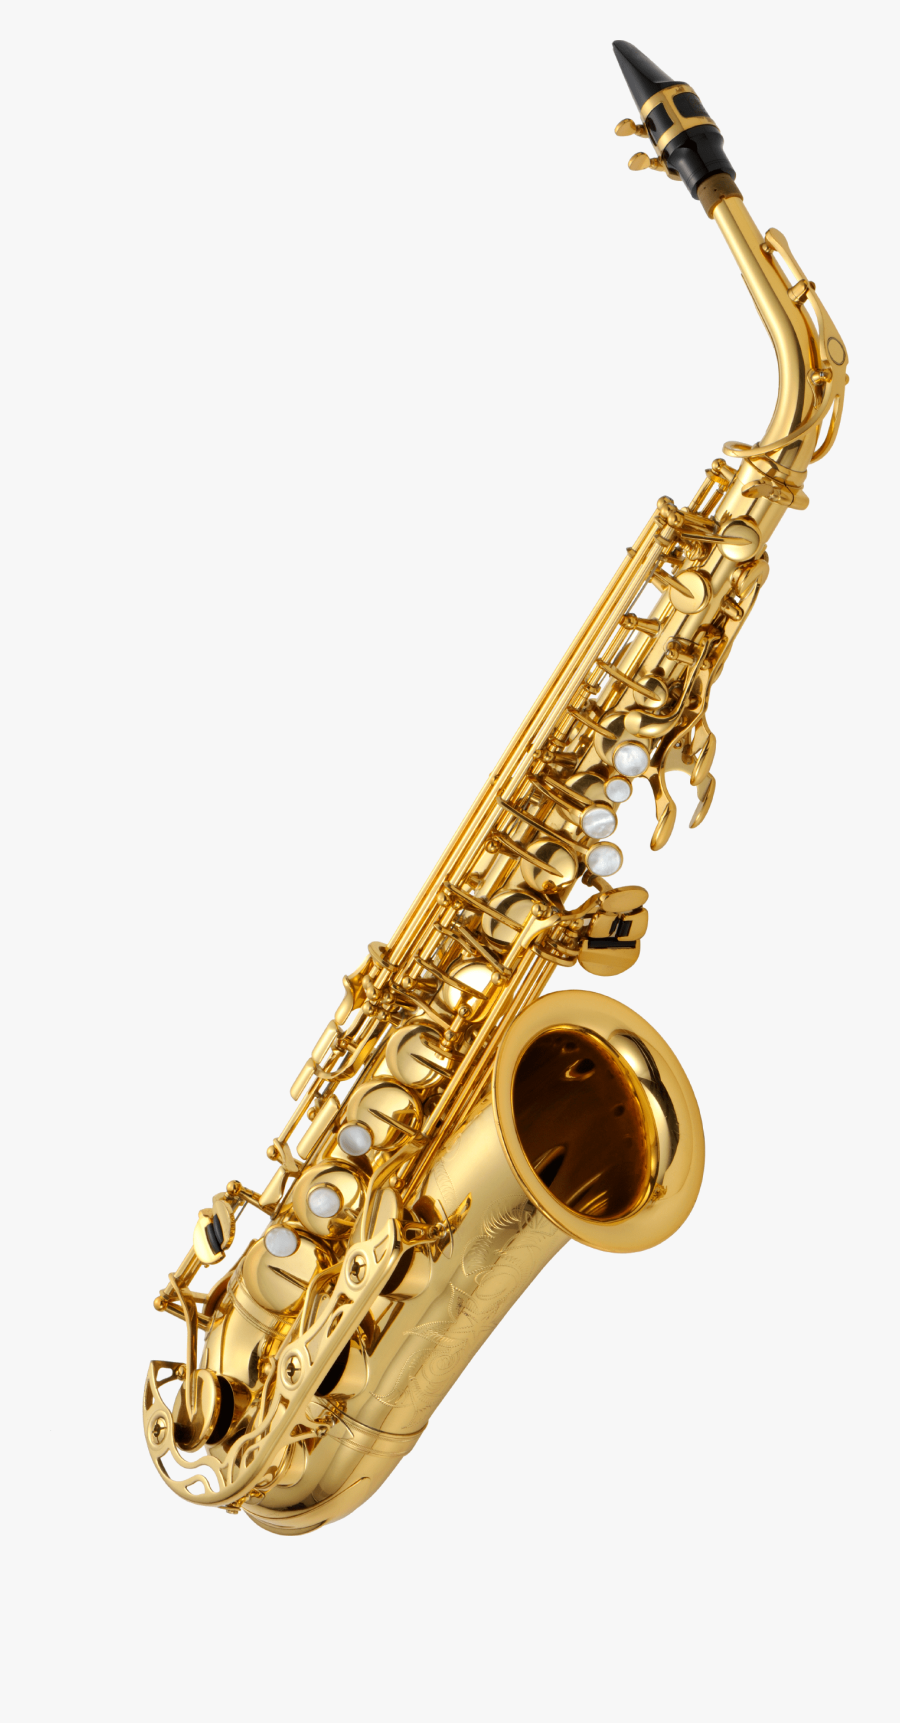 Saxophone Png, Transparent Clipart